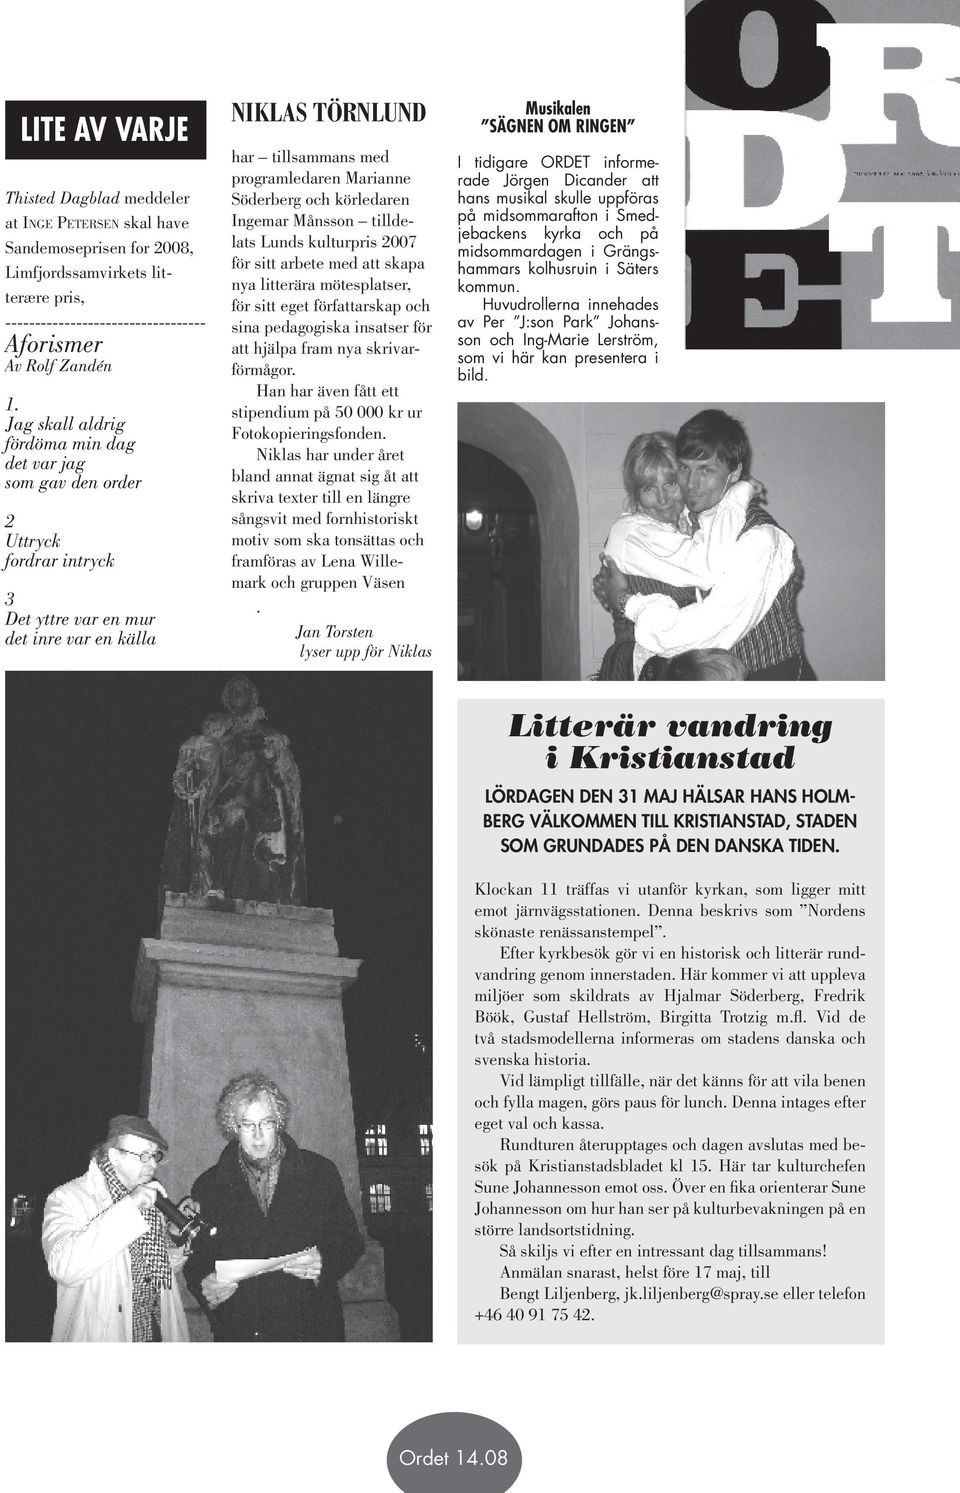 Söderberg och körledaren Ingemar Månsson tilldelats Lunds kulturpris 2007 för sitt arbete med att skapa nya litterära mötesplatser, för sitt eget författarskap och sina pedagogiska insatser för att